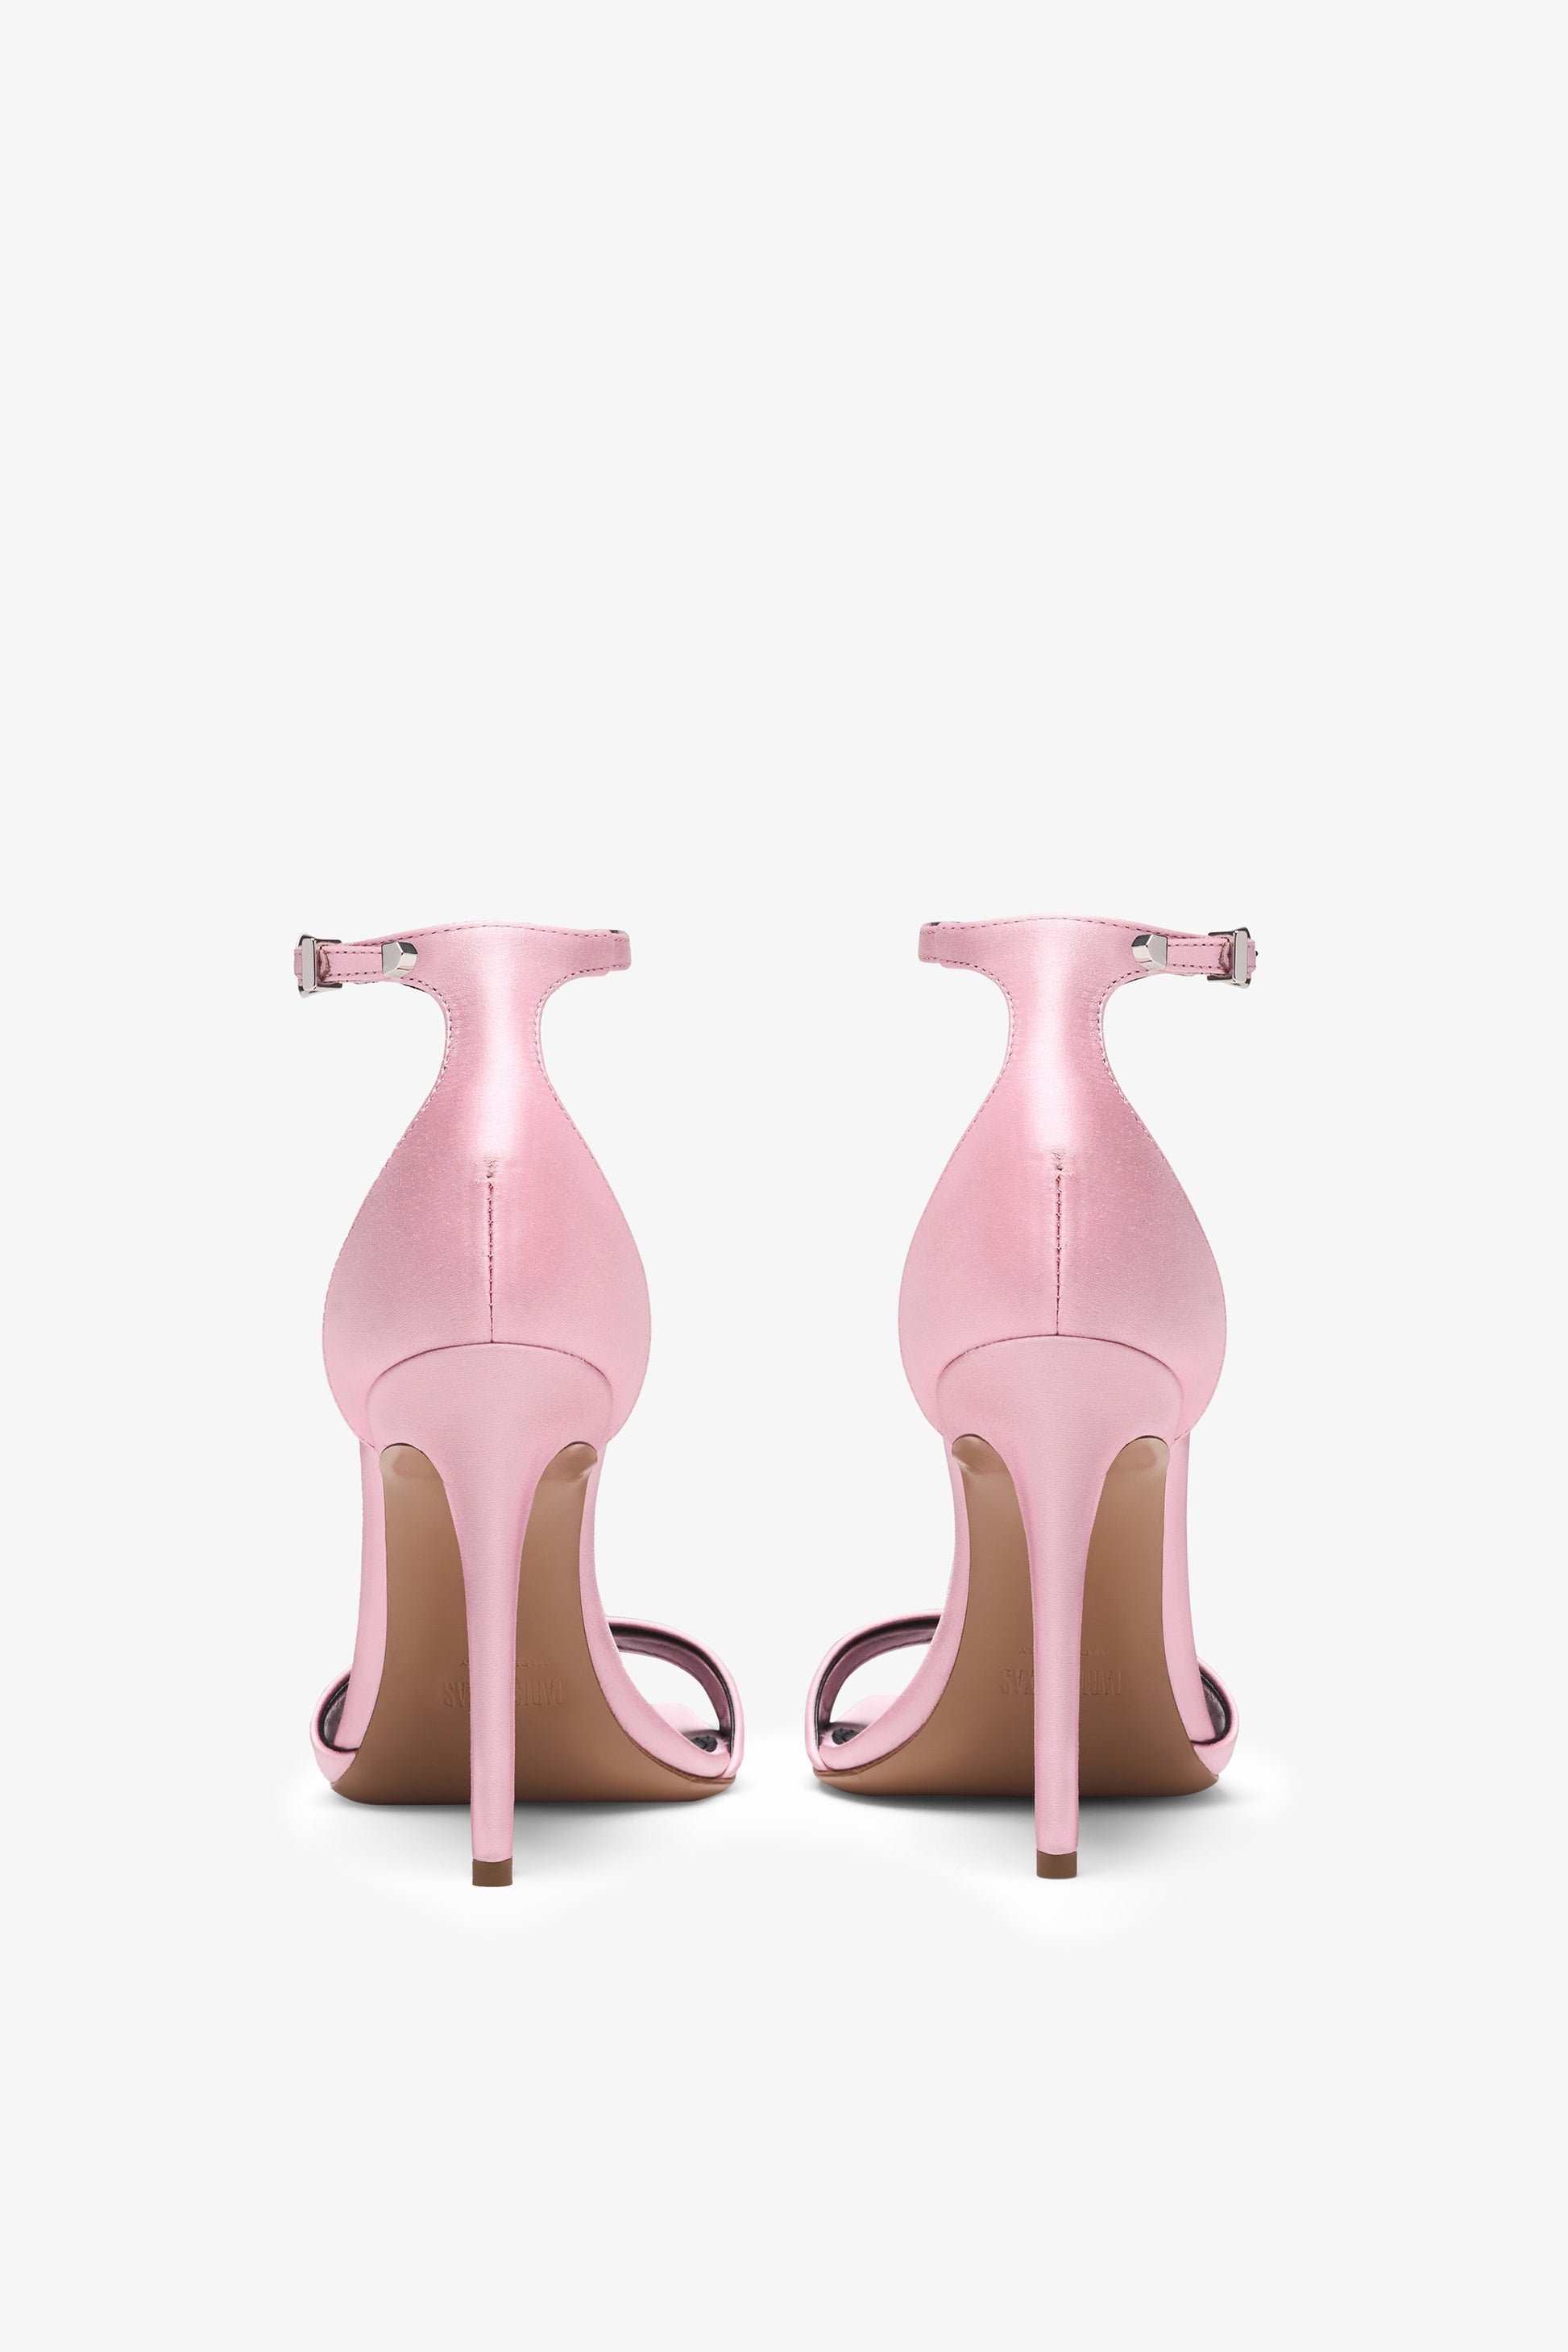 Sandalette mit Stiletto-Absatz aus gl"anzend rosafarbenem Leder